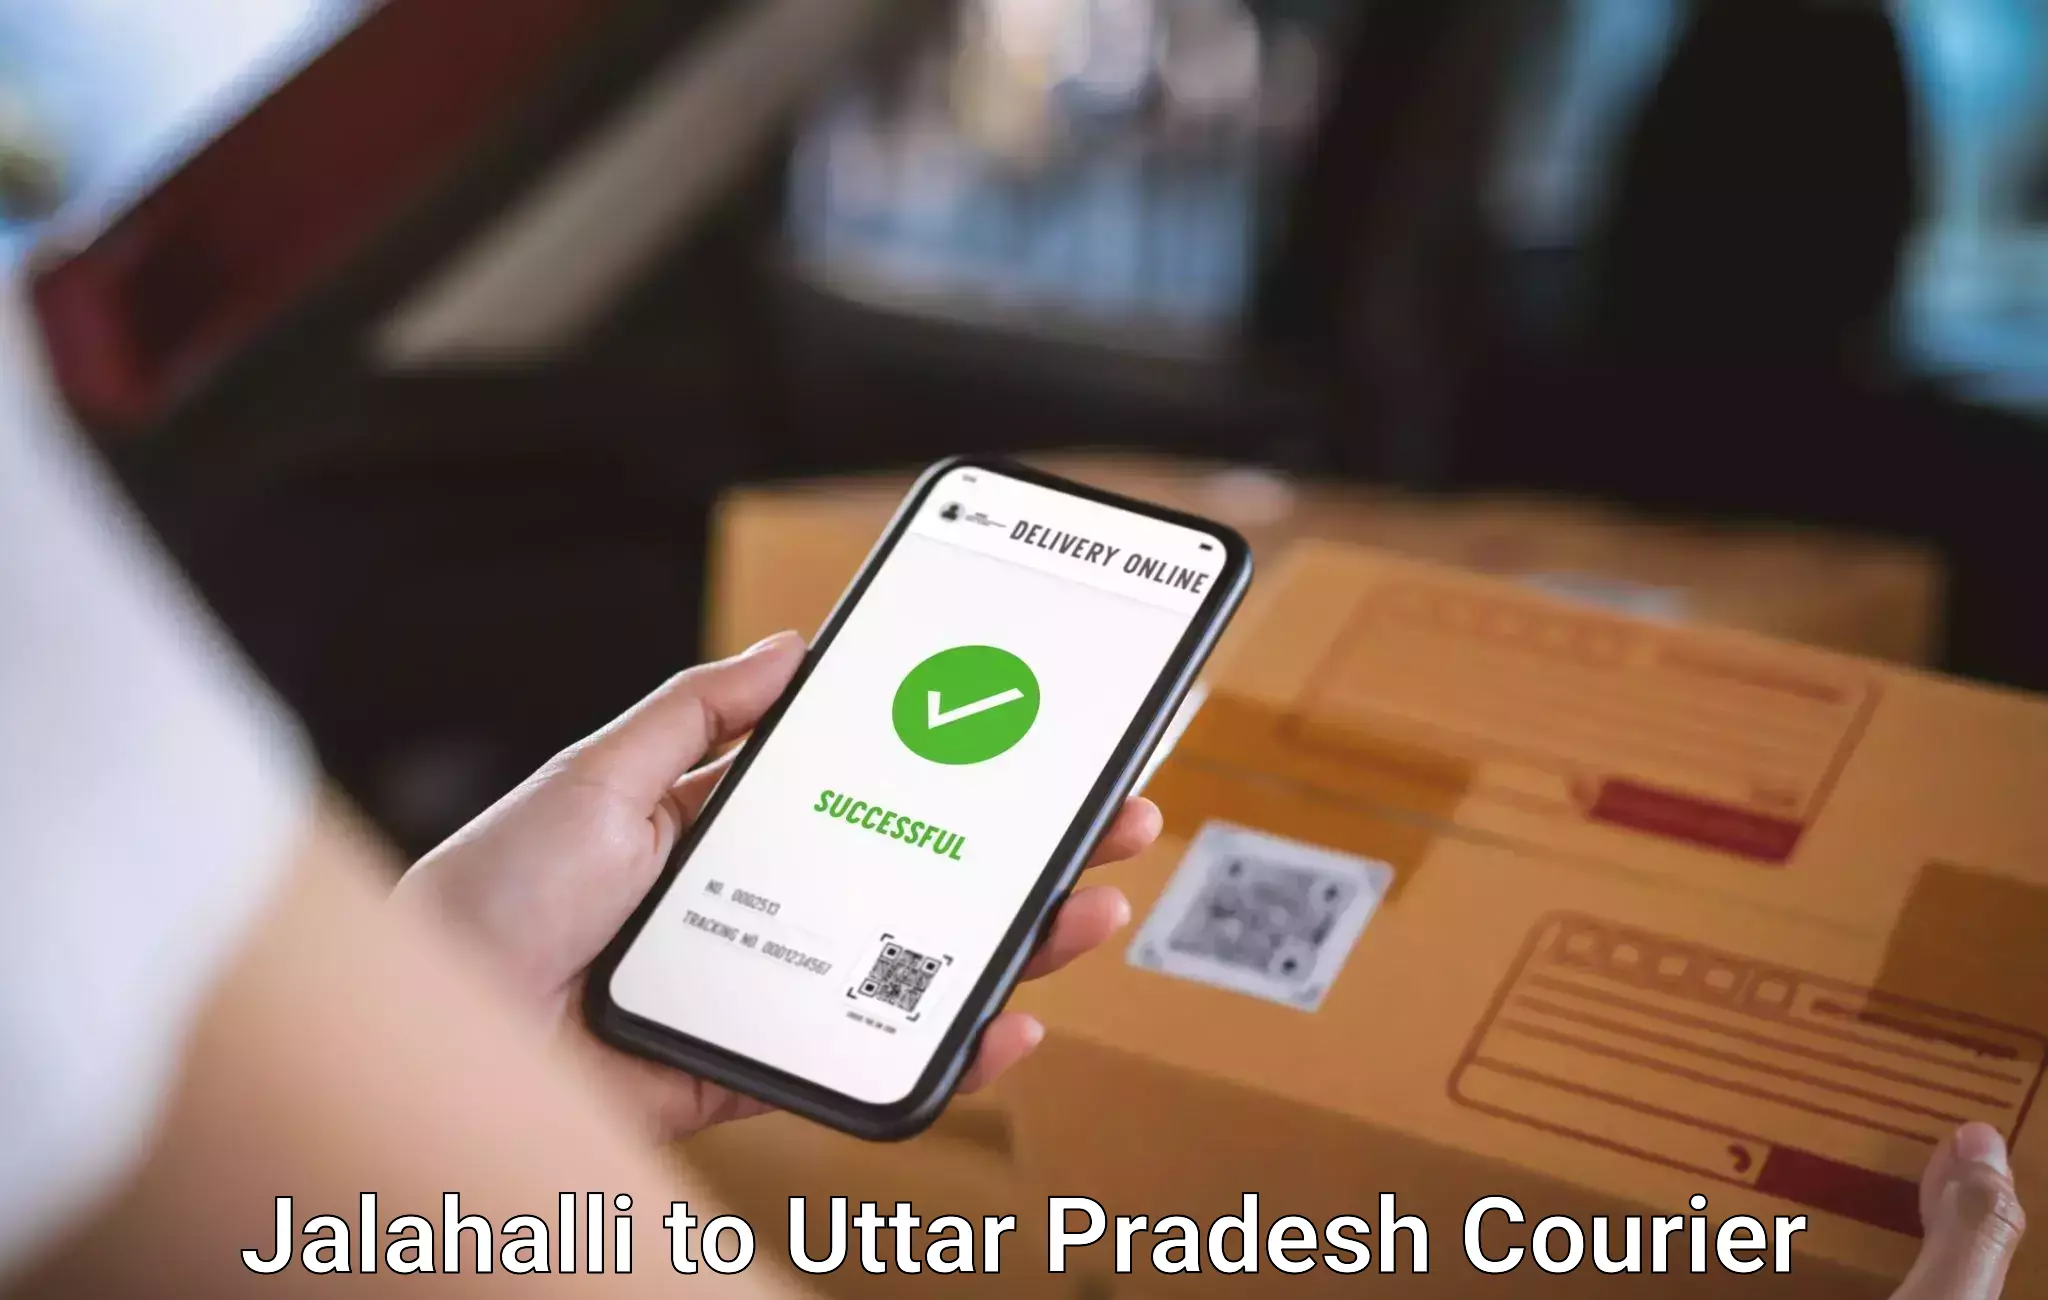 Luggage delivery app Jalahalli to Aligarh Muslim University